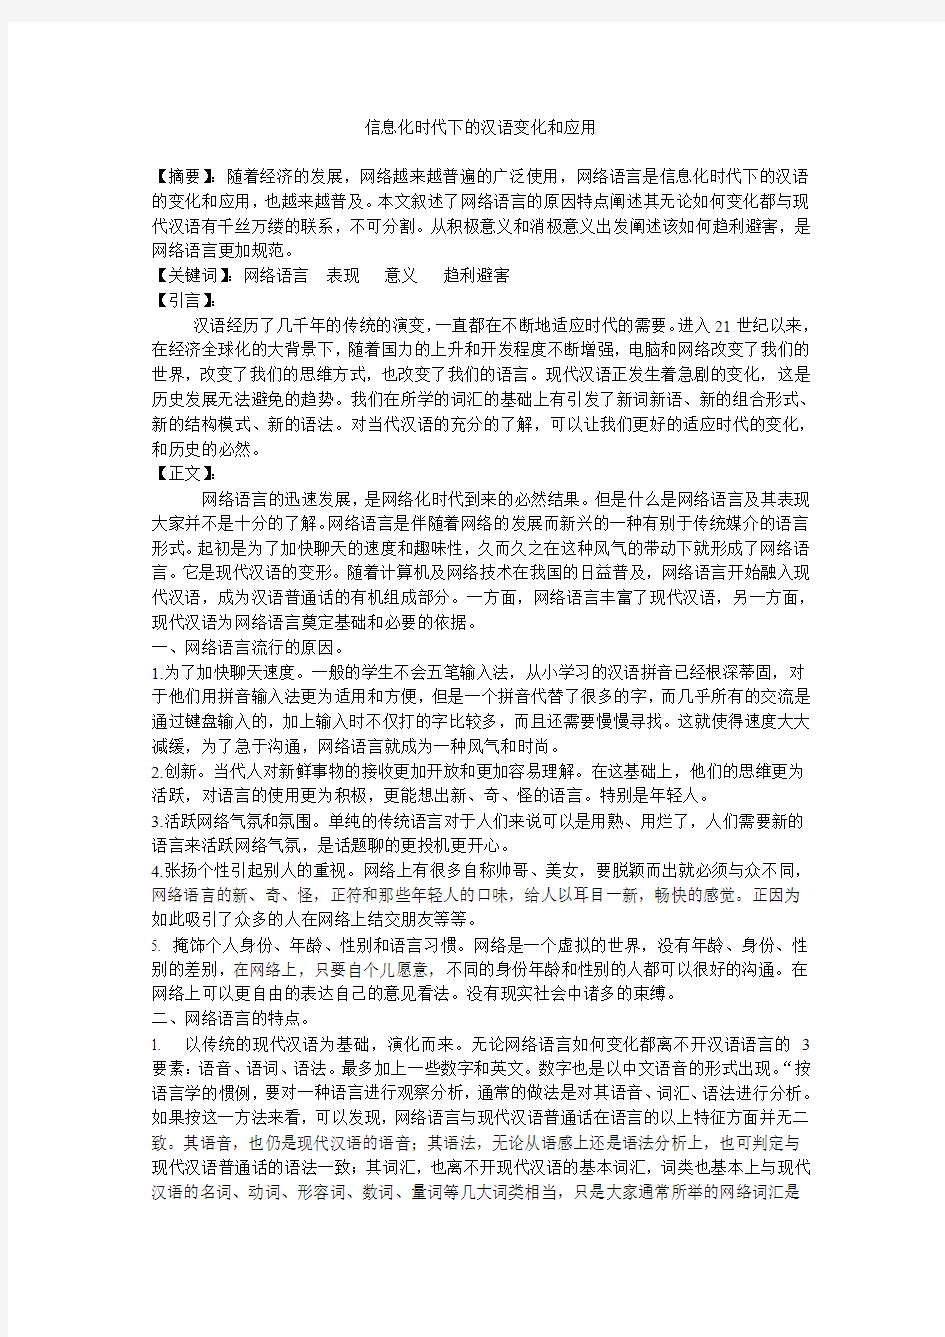 信息化时代下的汉语变化和应用